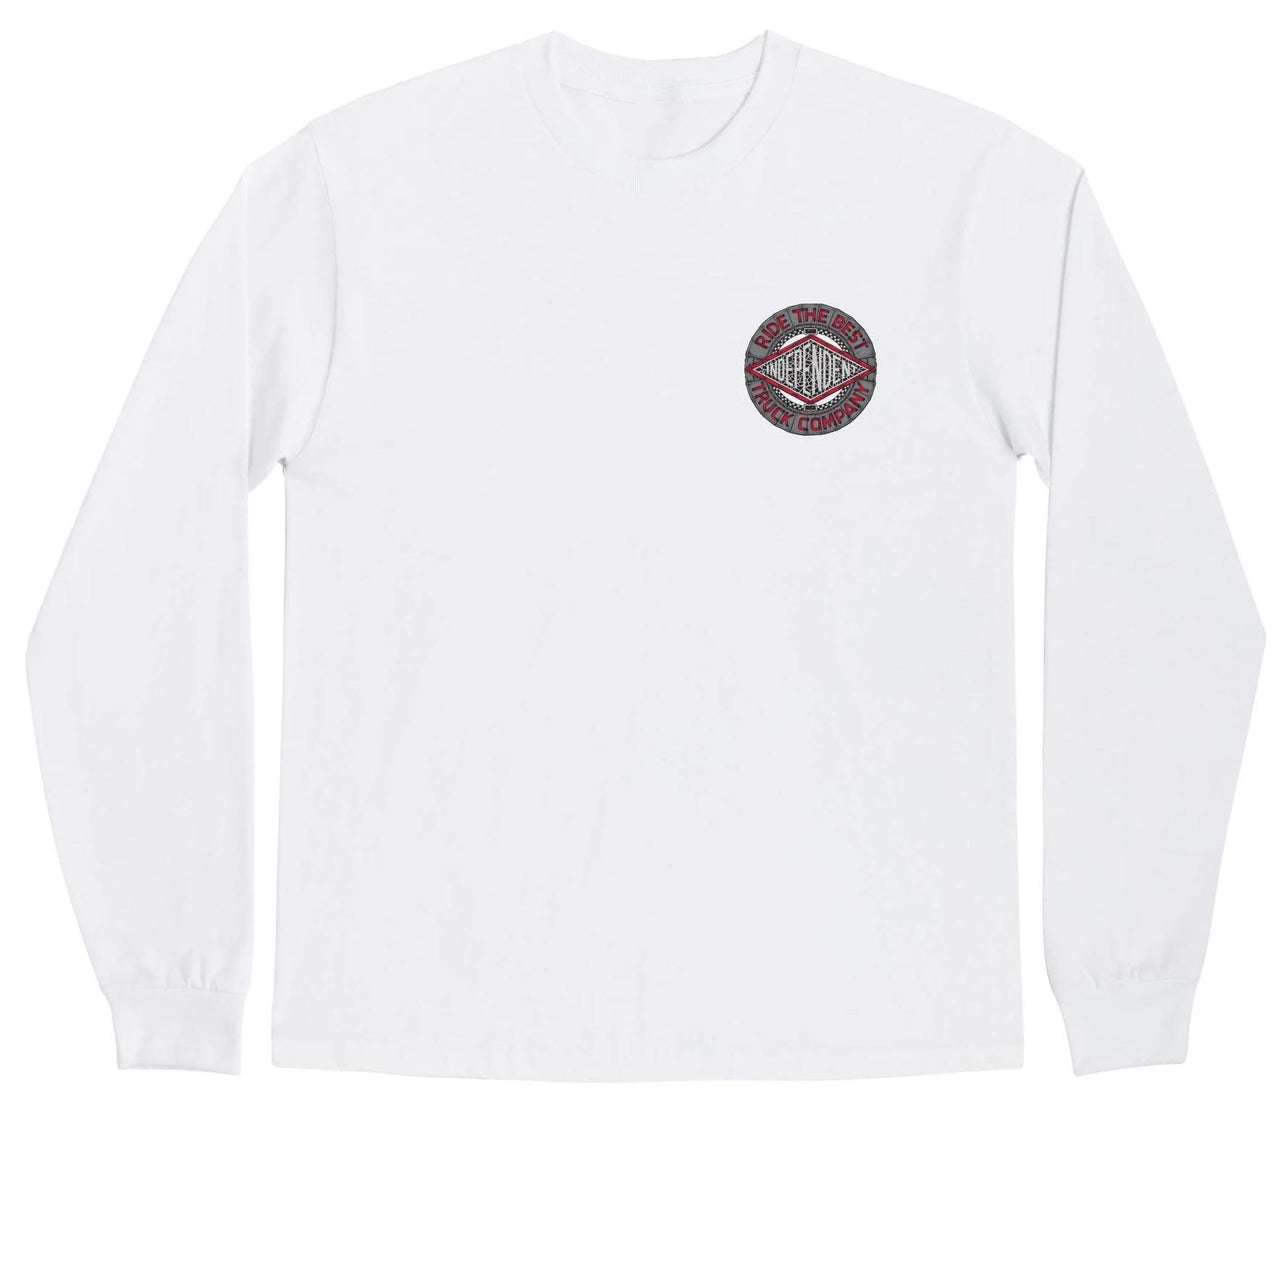 Independent Mako Tile Summit Long Sleeve T-Shirt - White image 2